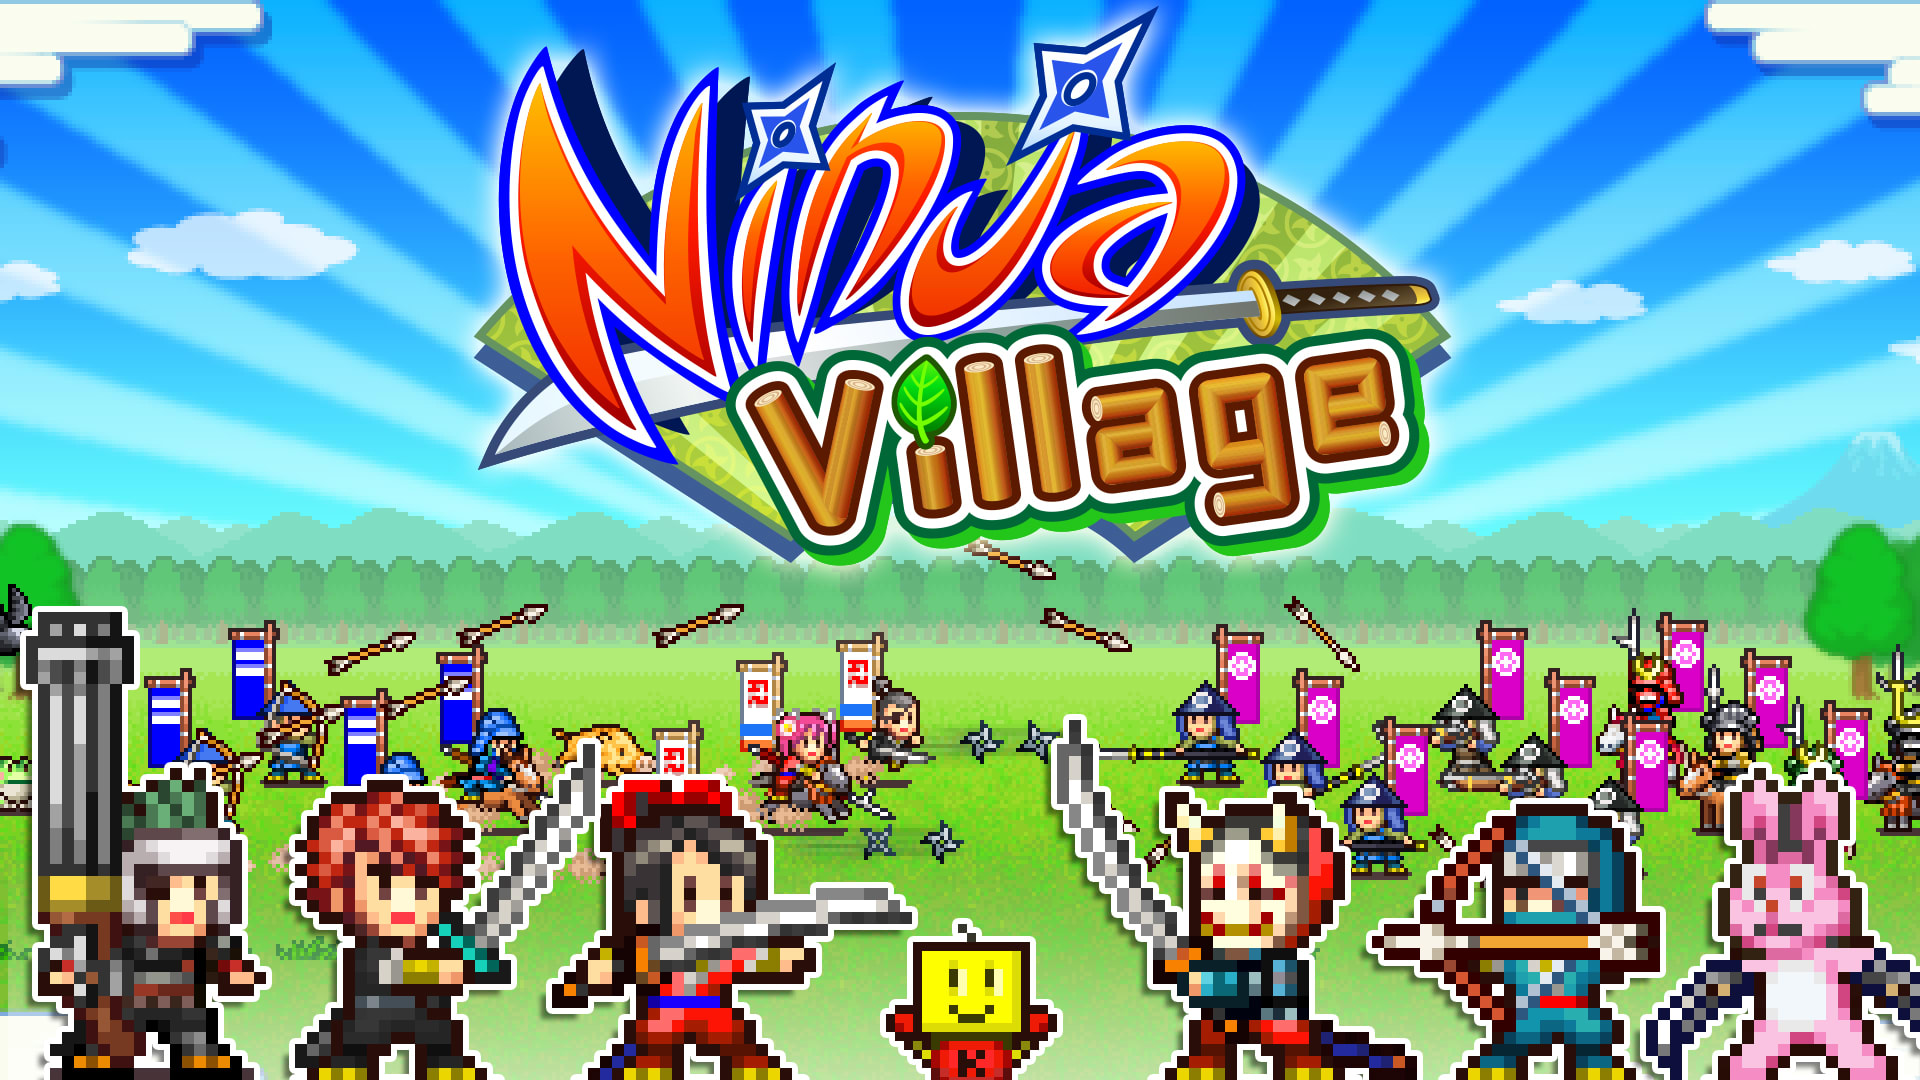 Ninja Village 1